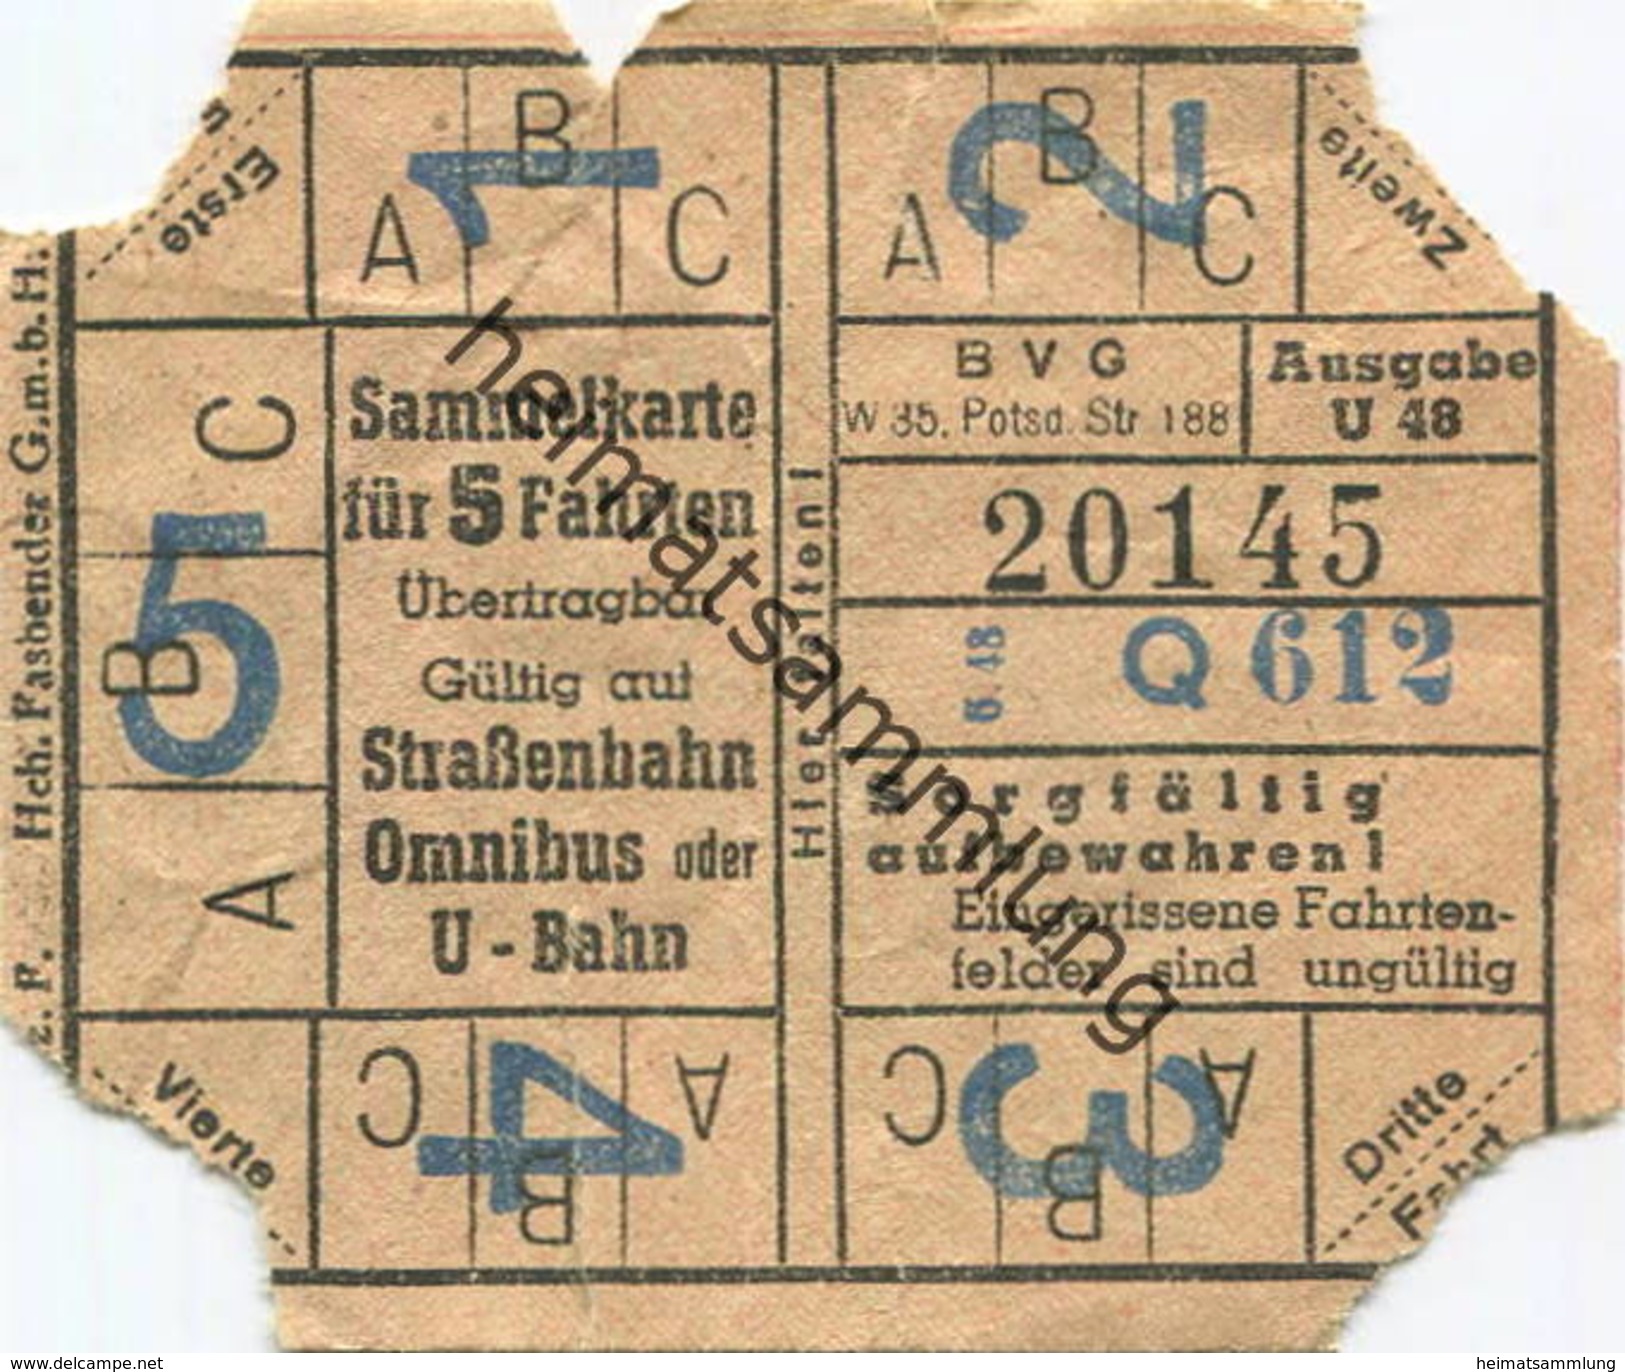 Deutschland - Berlin - BVG - Sammelkarte Für 5 Fahrten 1948 - Gültig Auf Strassenbahn Omnibus Oder U-Bahn - Europe